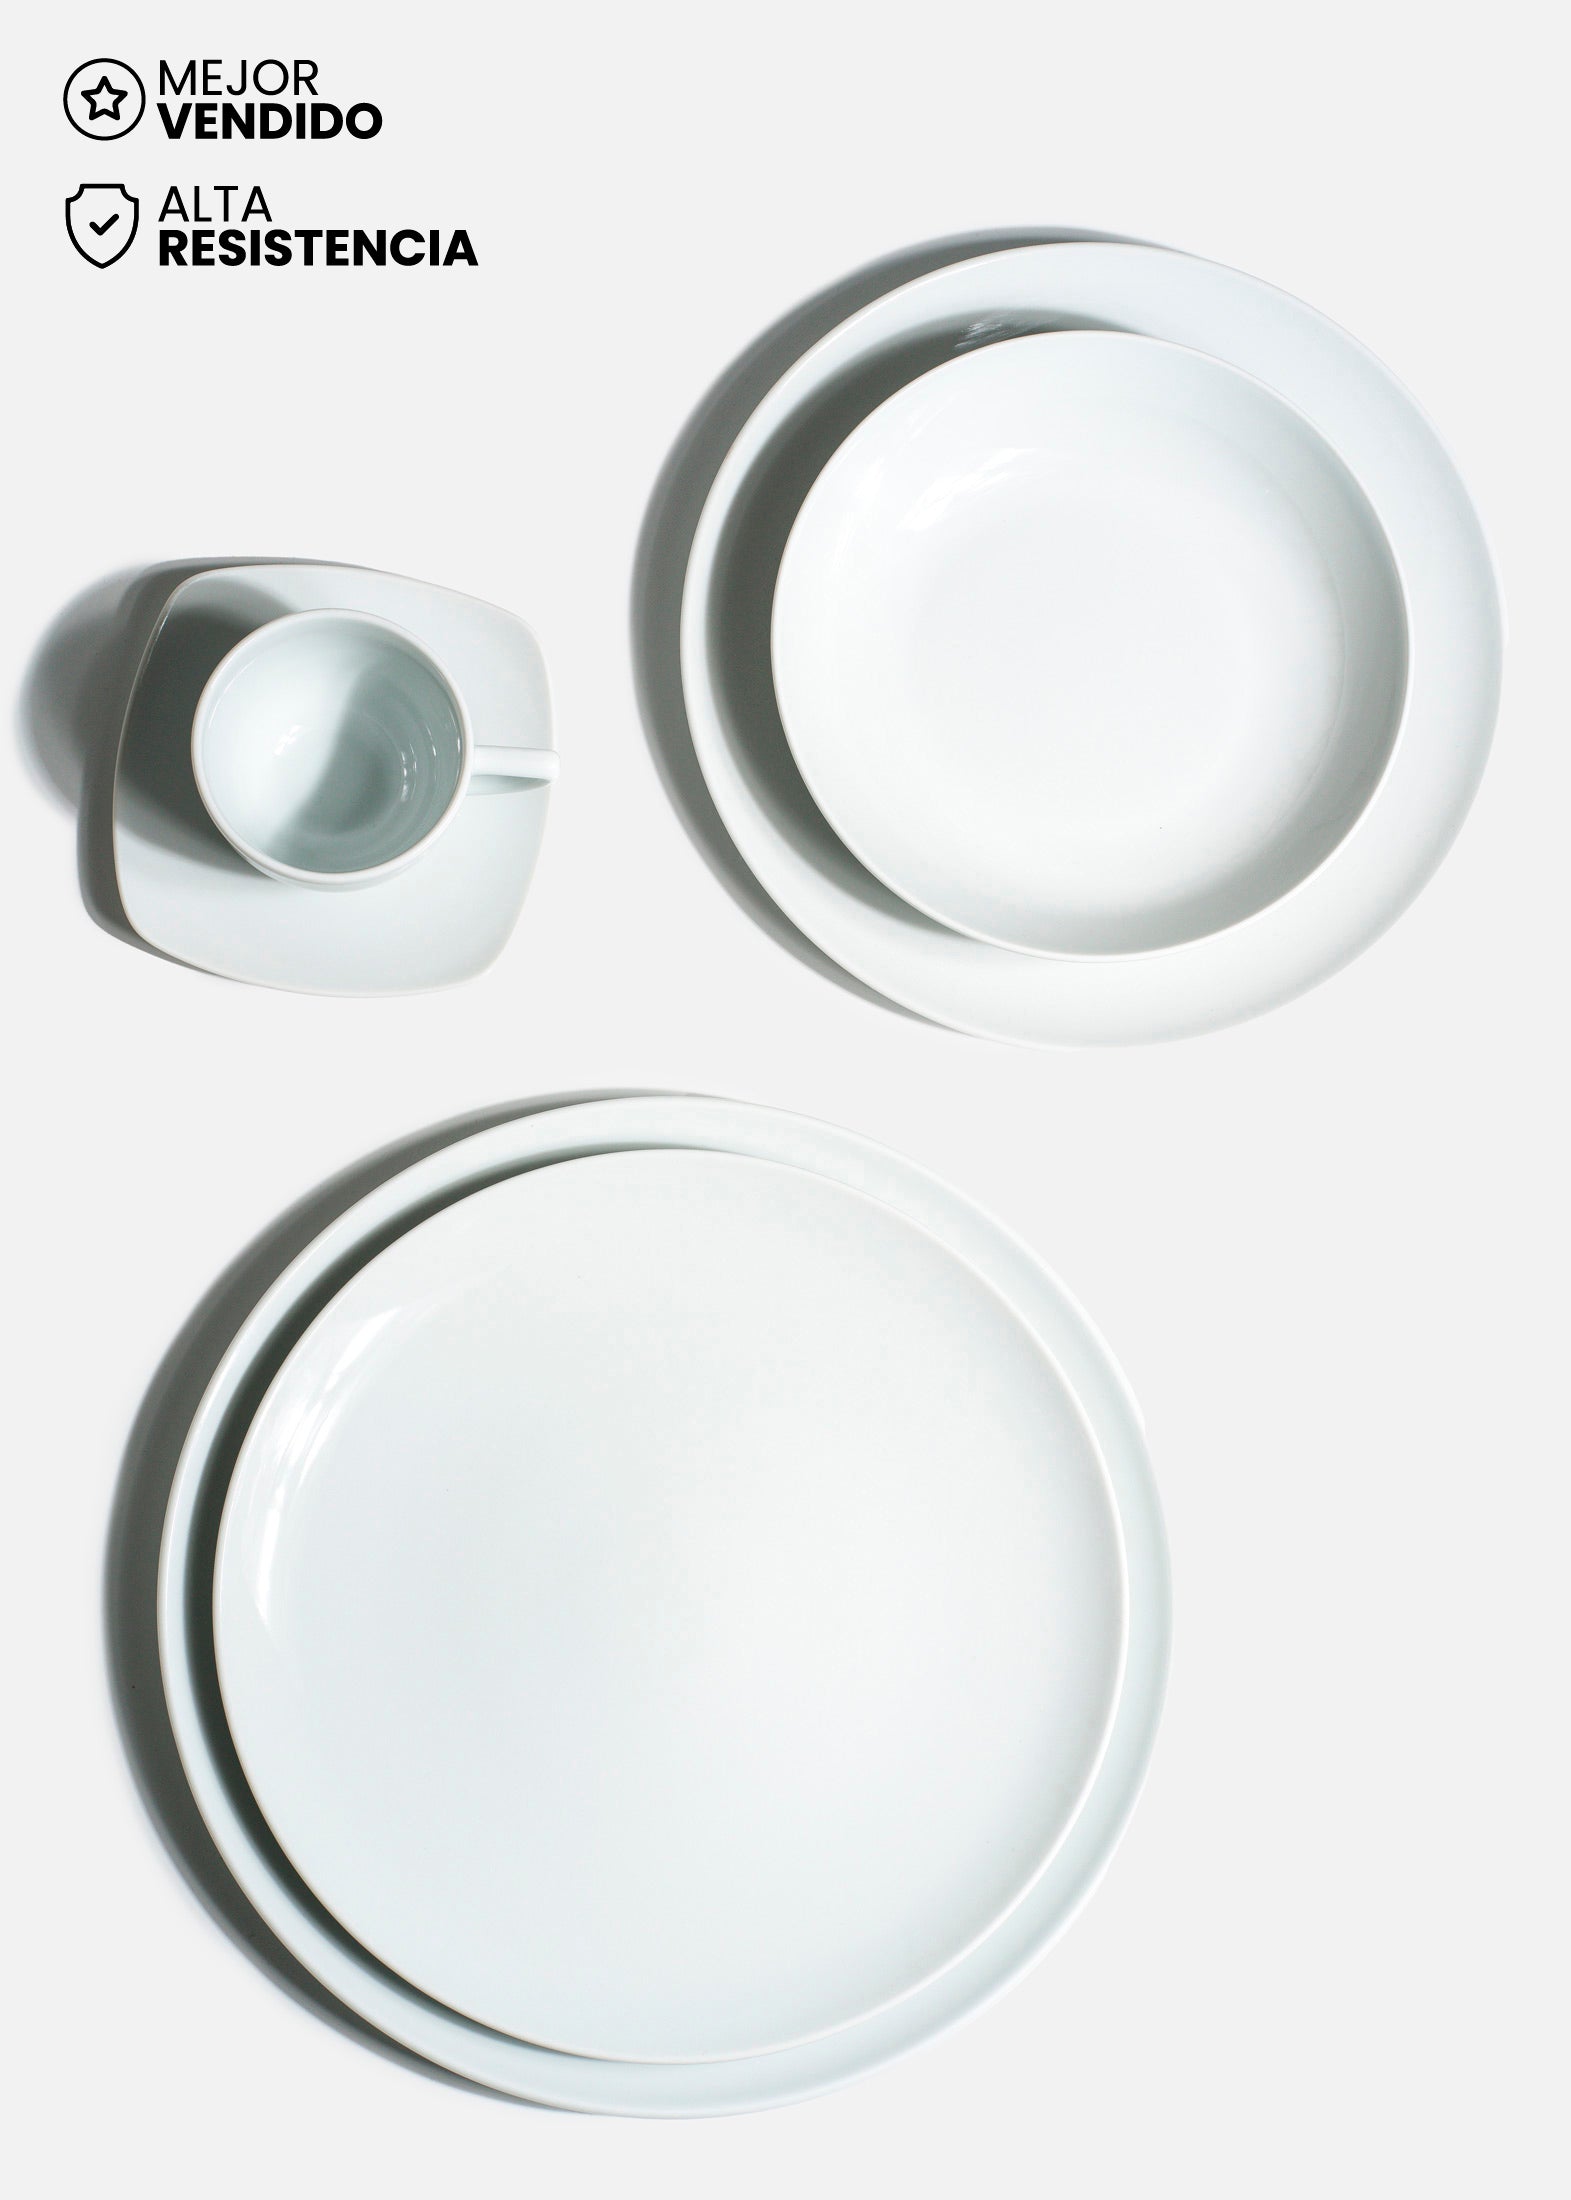 Platos de porcelana blanco Elegance